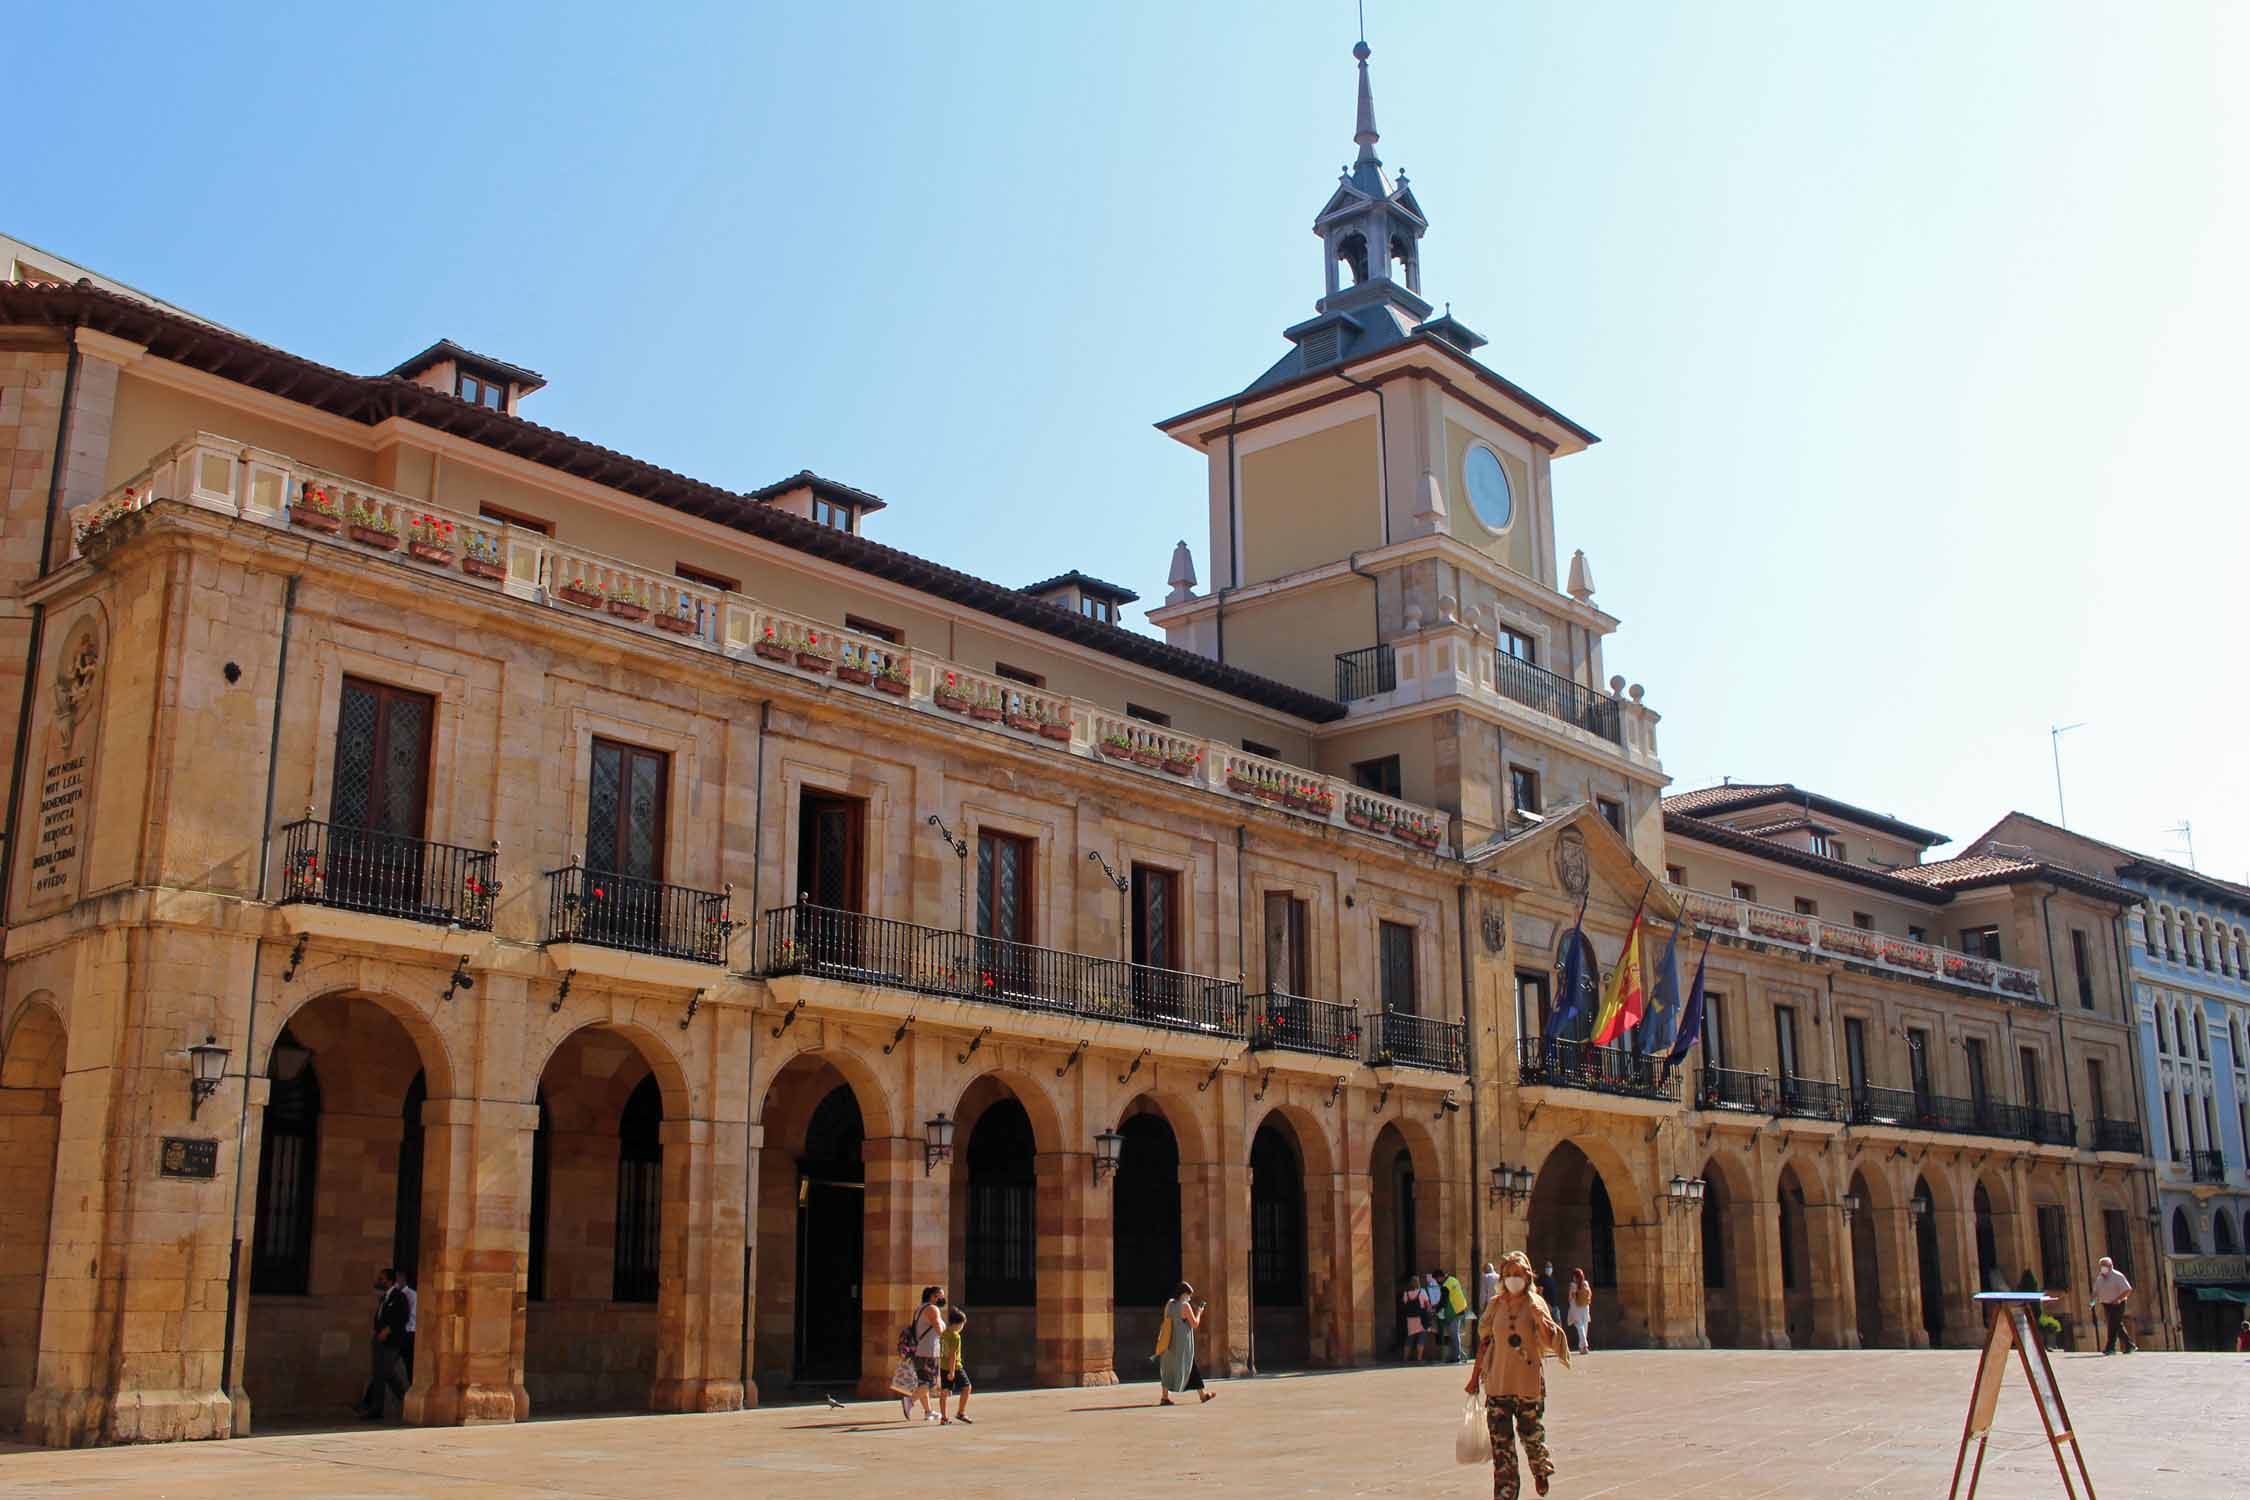 Oviedo, hôtel de ville